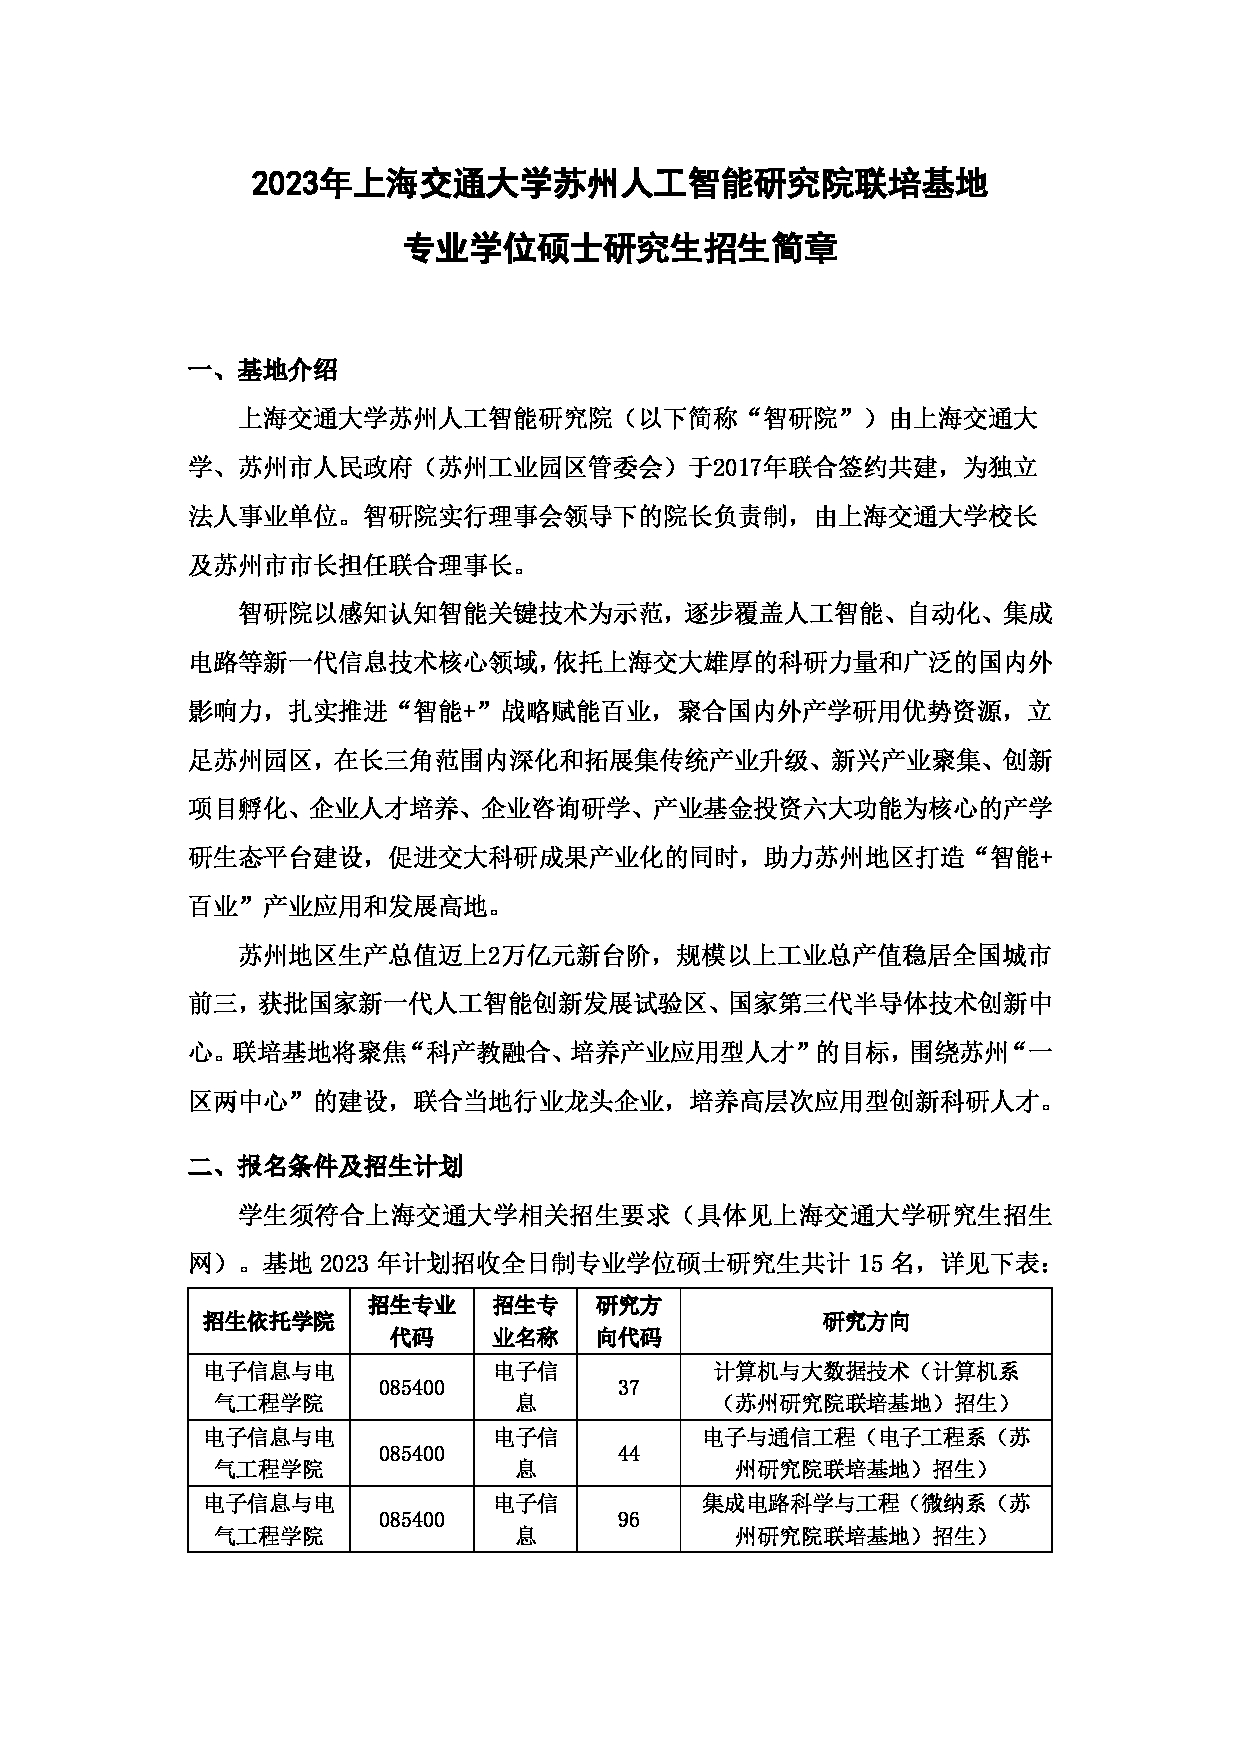 2023招生简章：上海交通大学苏州研究院联培基地2023年专业学位硕士研究生招生简章第1页